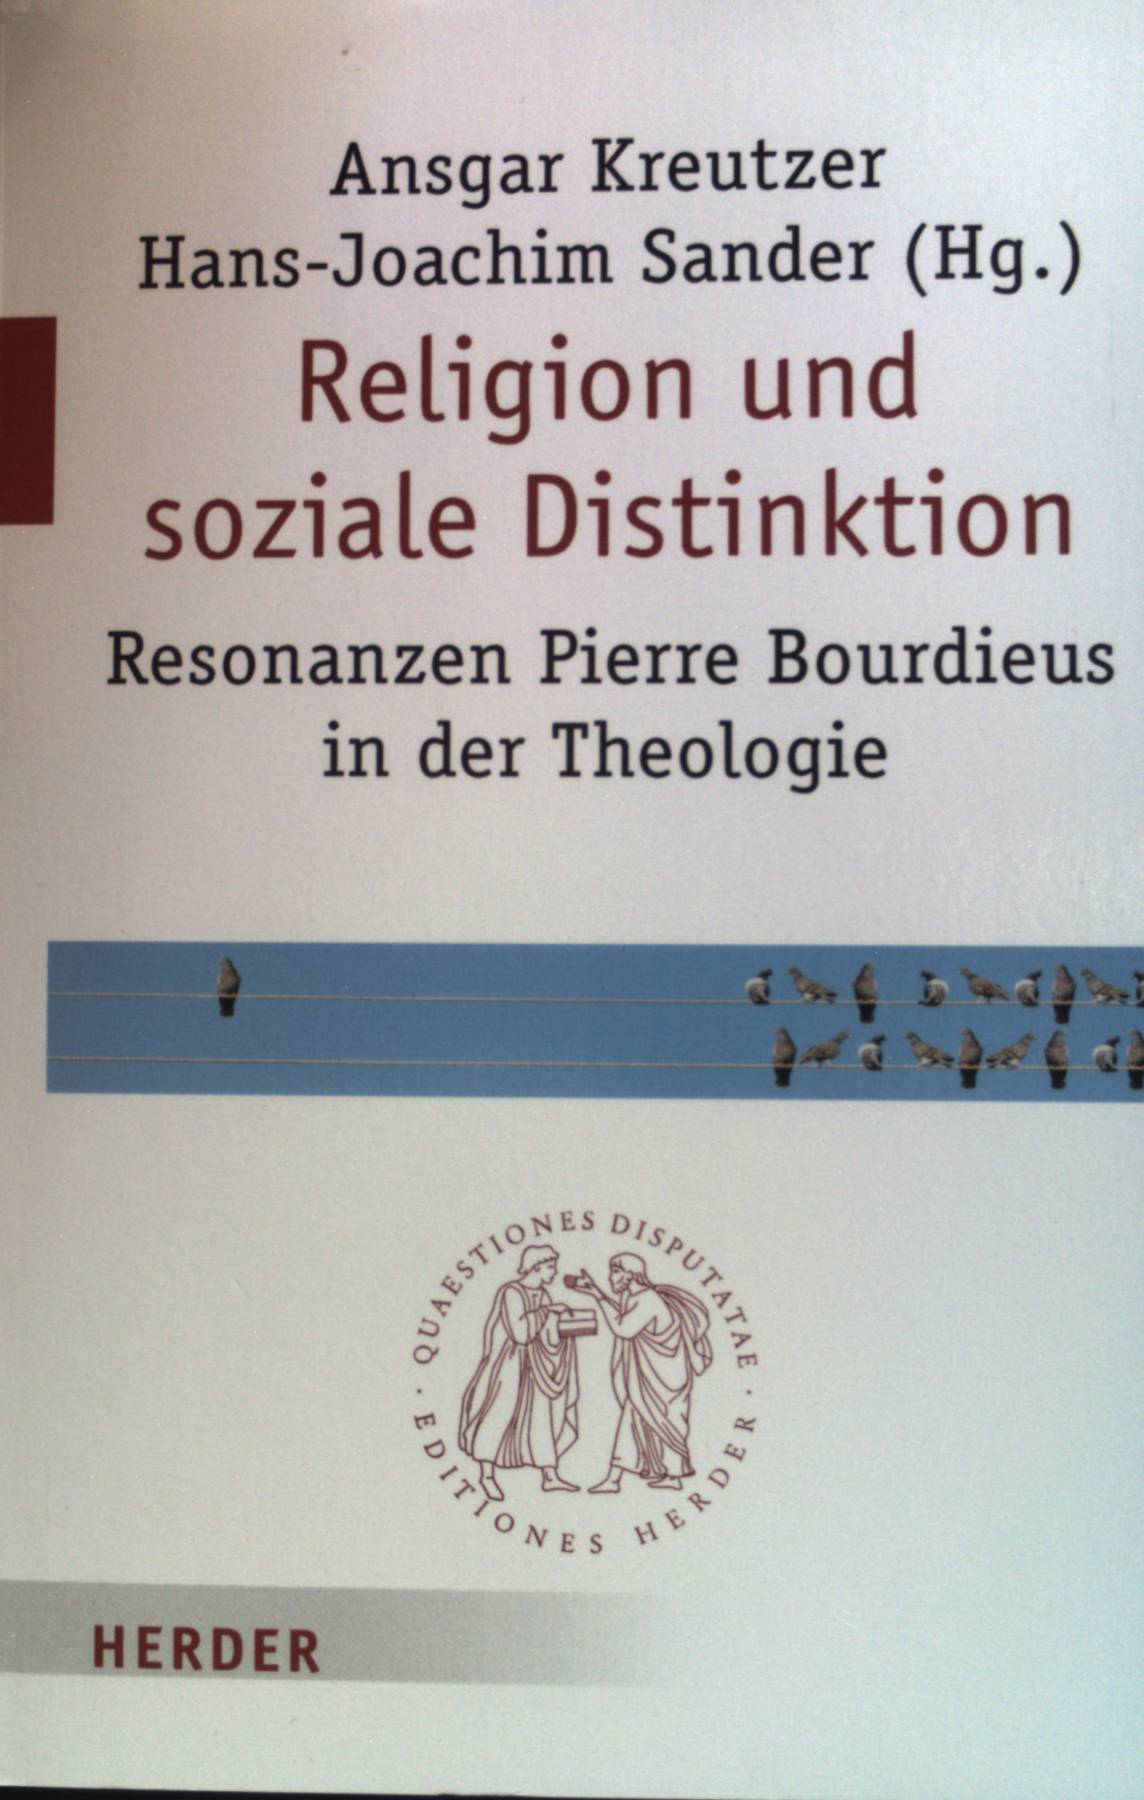 Religion und soziale Distinktion : Resonanzen Pierre Bourdieus in der Theologie. Quaestiones Disputatae 295; - Kreutzer, Ansgar und Hans-Joachim (Herausg.) Sander